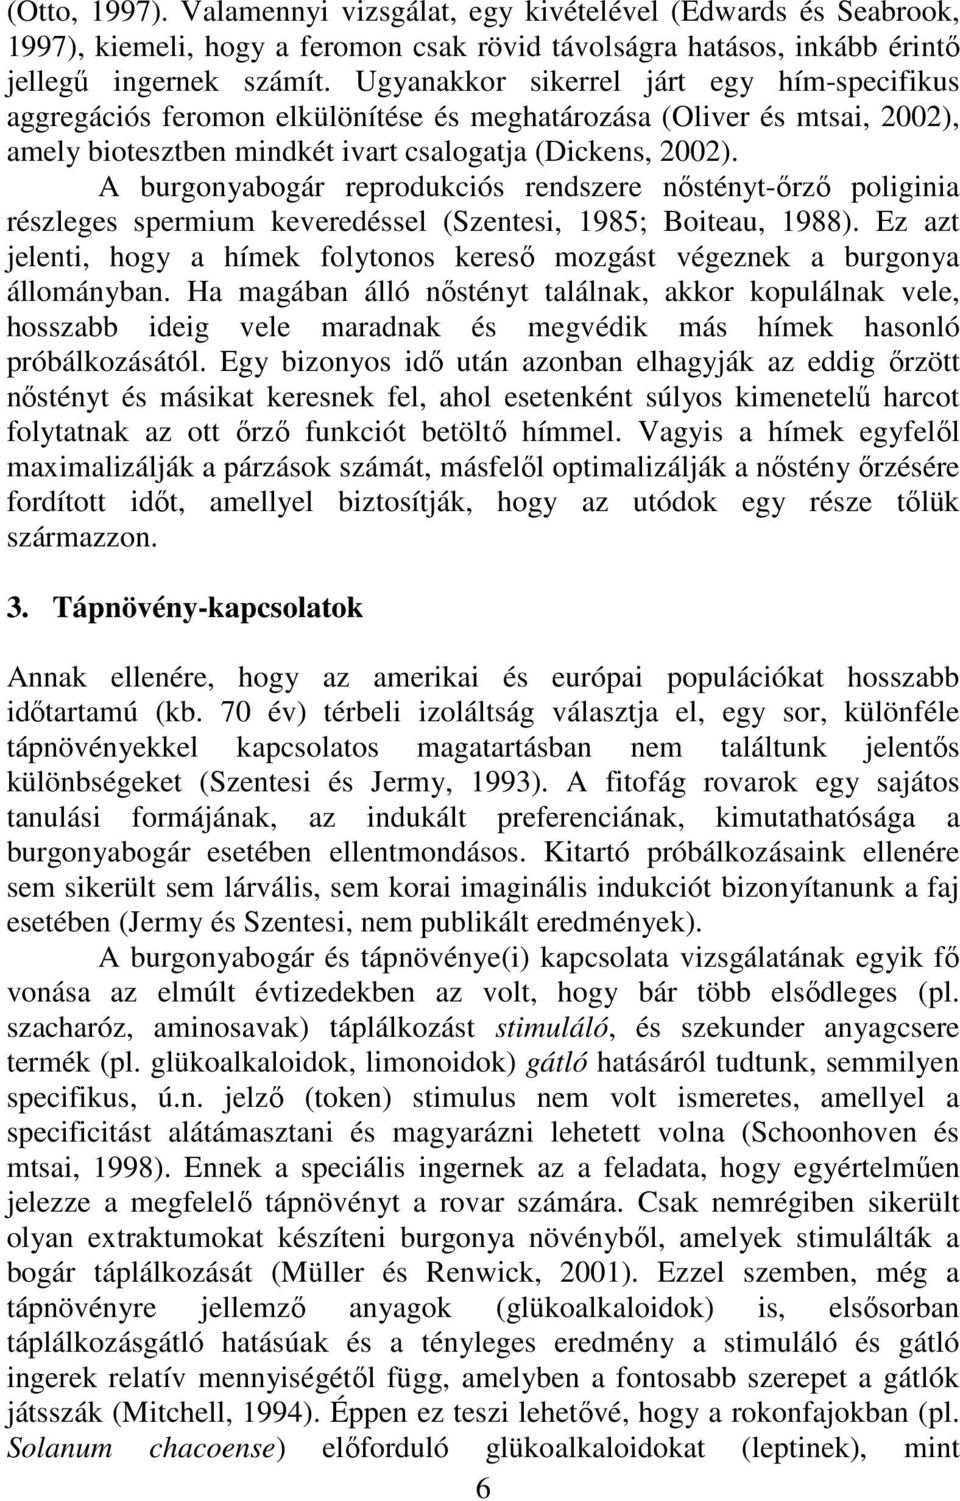 A burgonyabogár reprodukciós rendszere nőstényt-őrző poliginia részleges spermium keveredéssel (Szentesi, 1985; Boiteau, 1988).